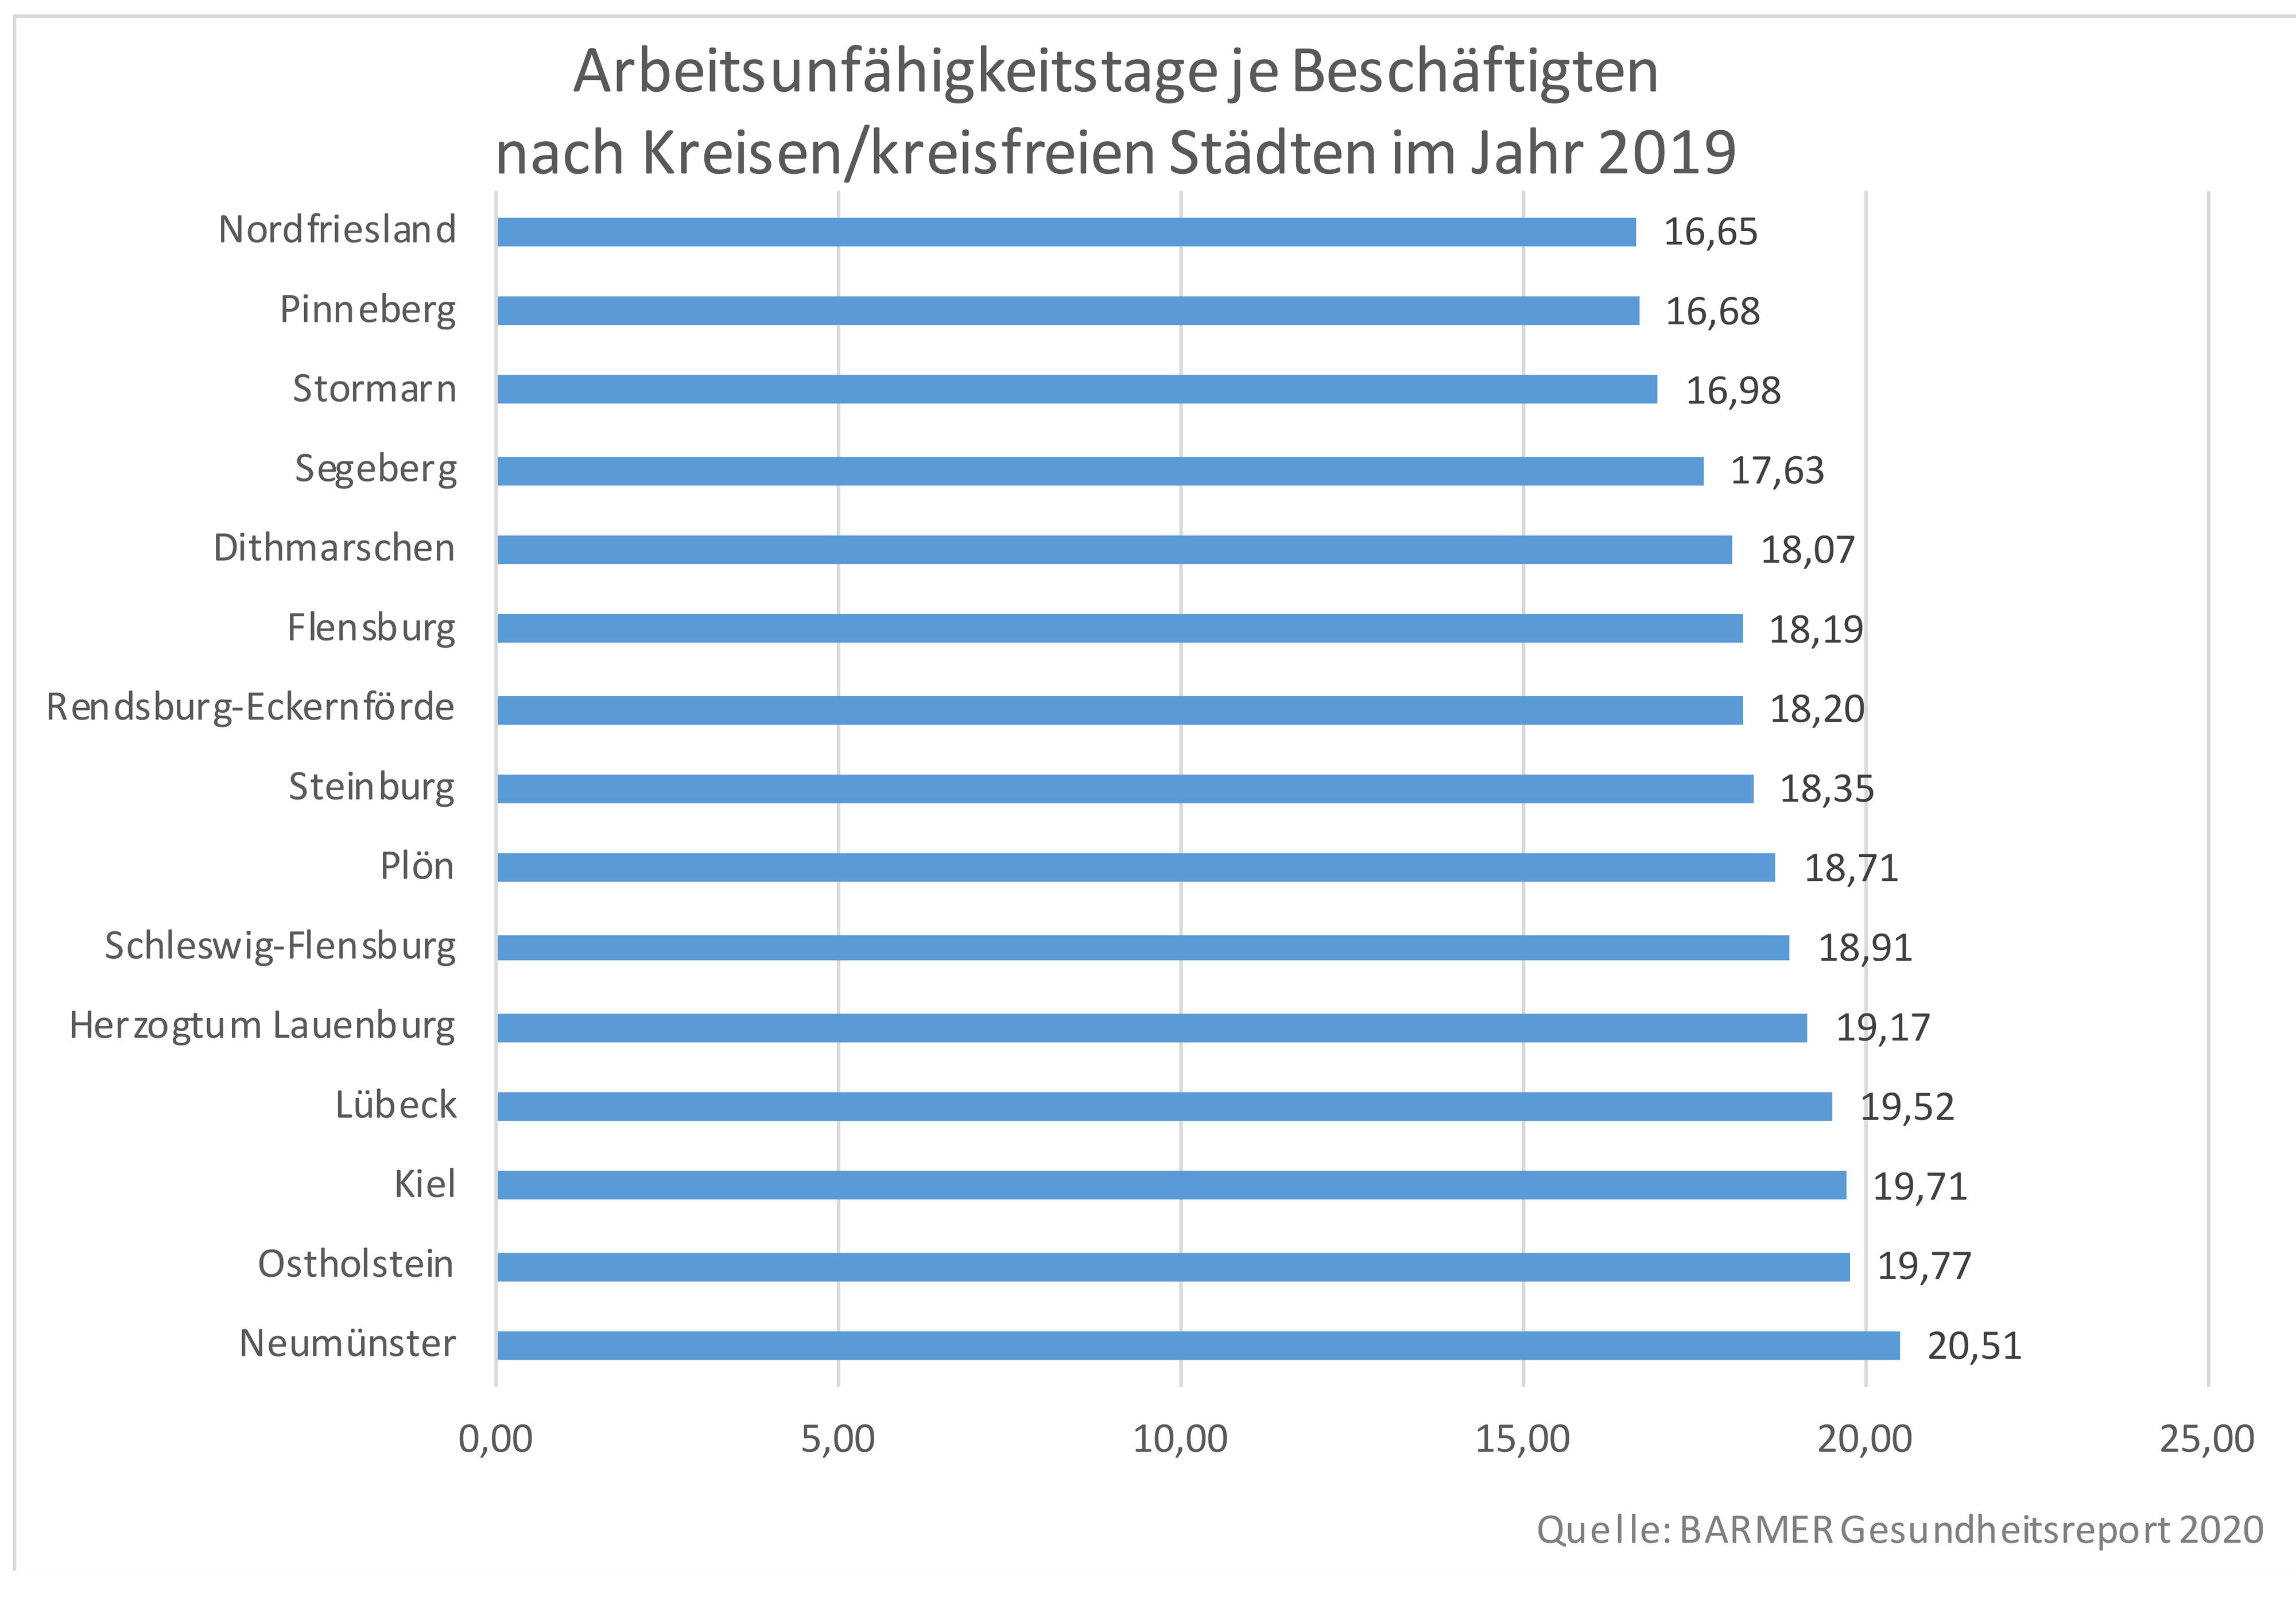 Grafik der Arbeitsunfähigkeitstage je Beschäftigten nach Landkreisen in Schleswig-Holstein im Jahr 2019